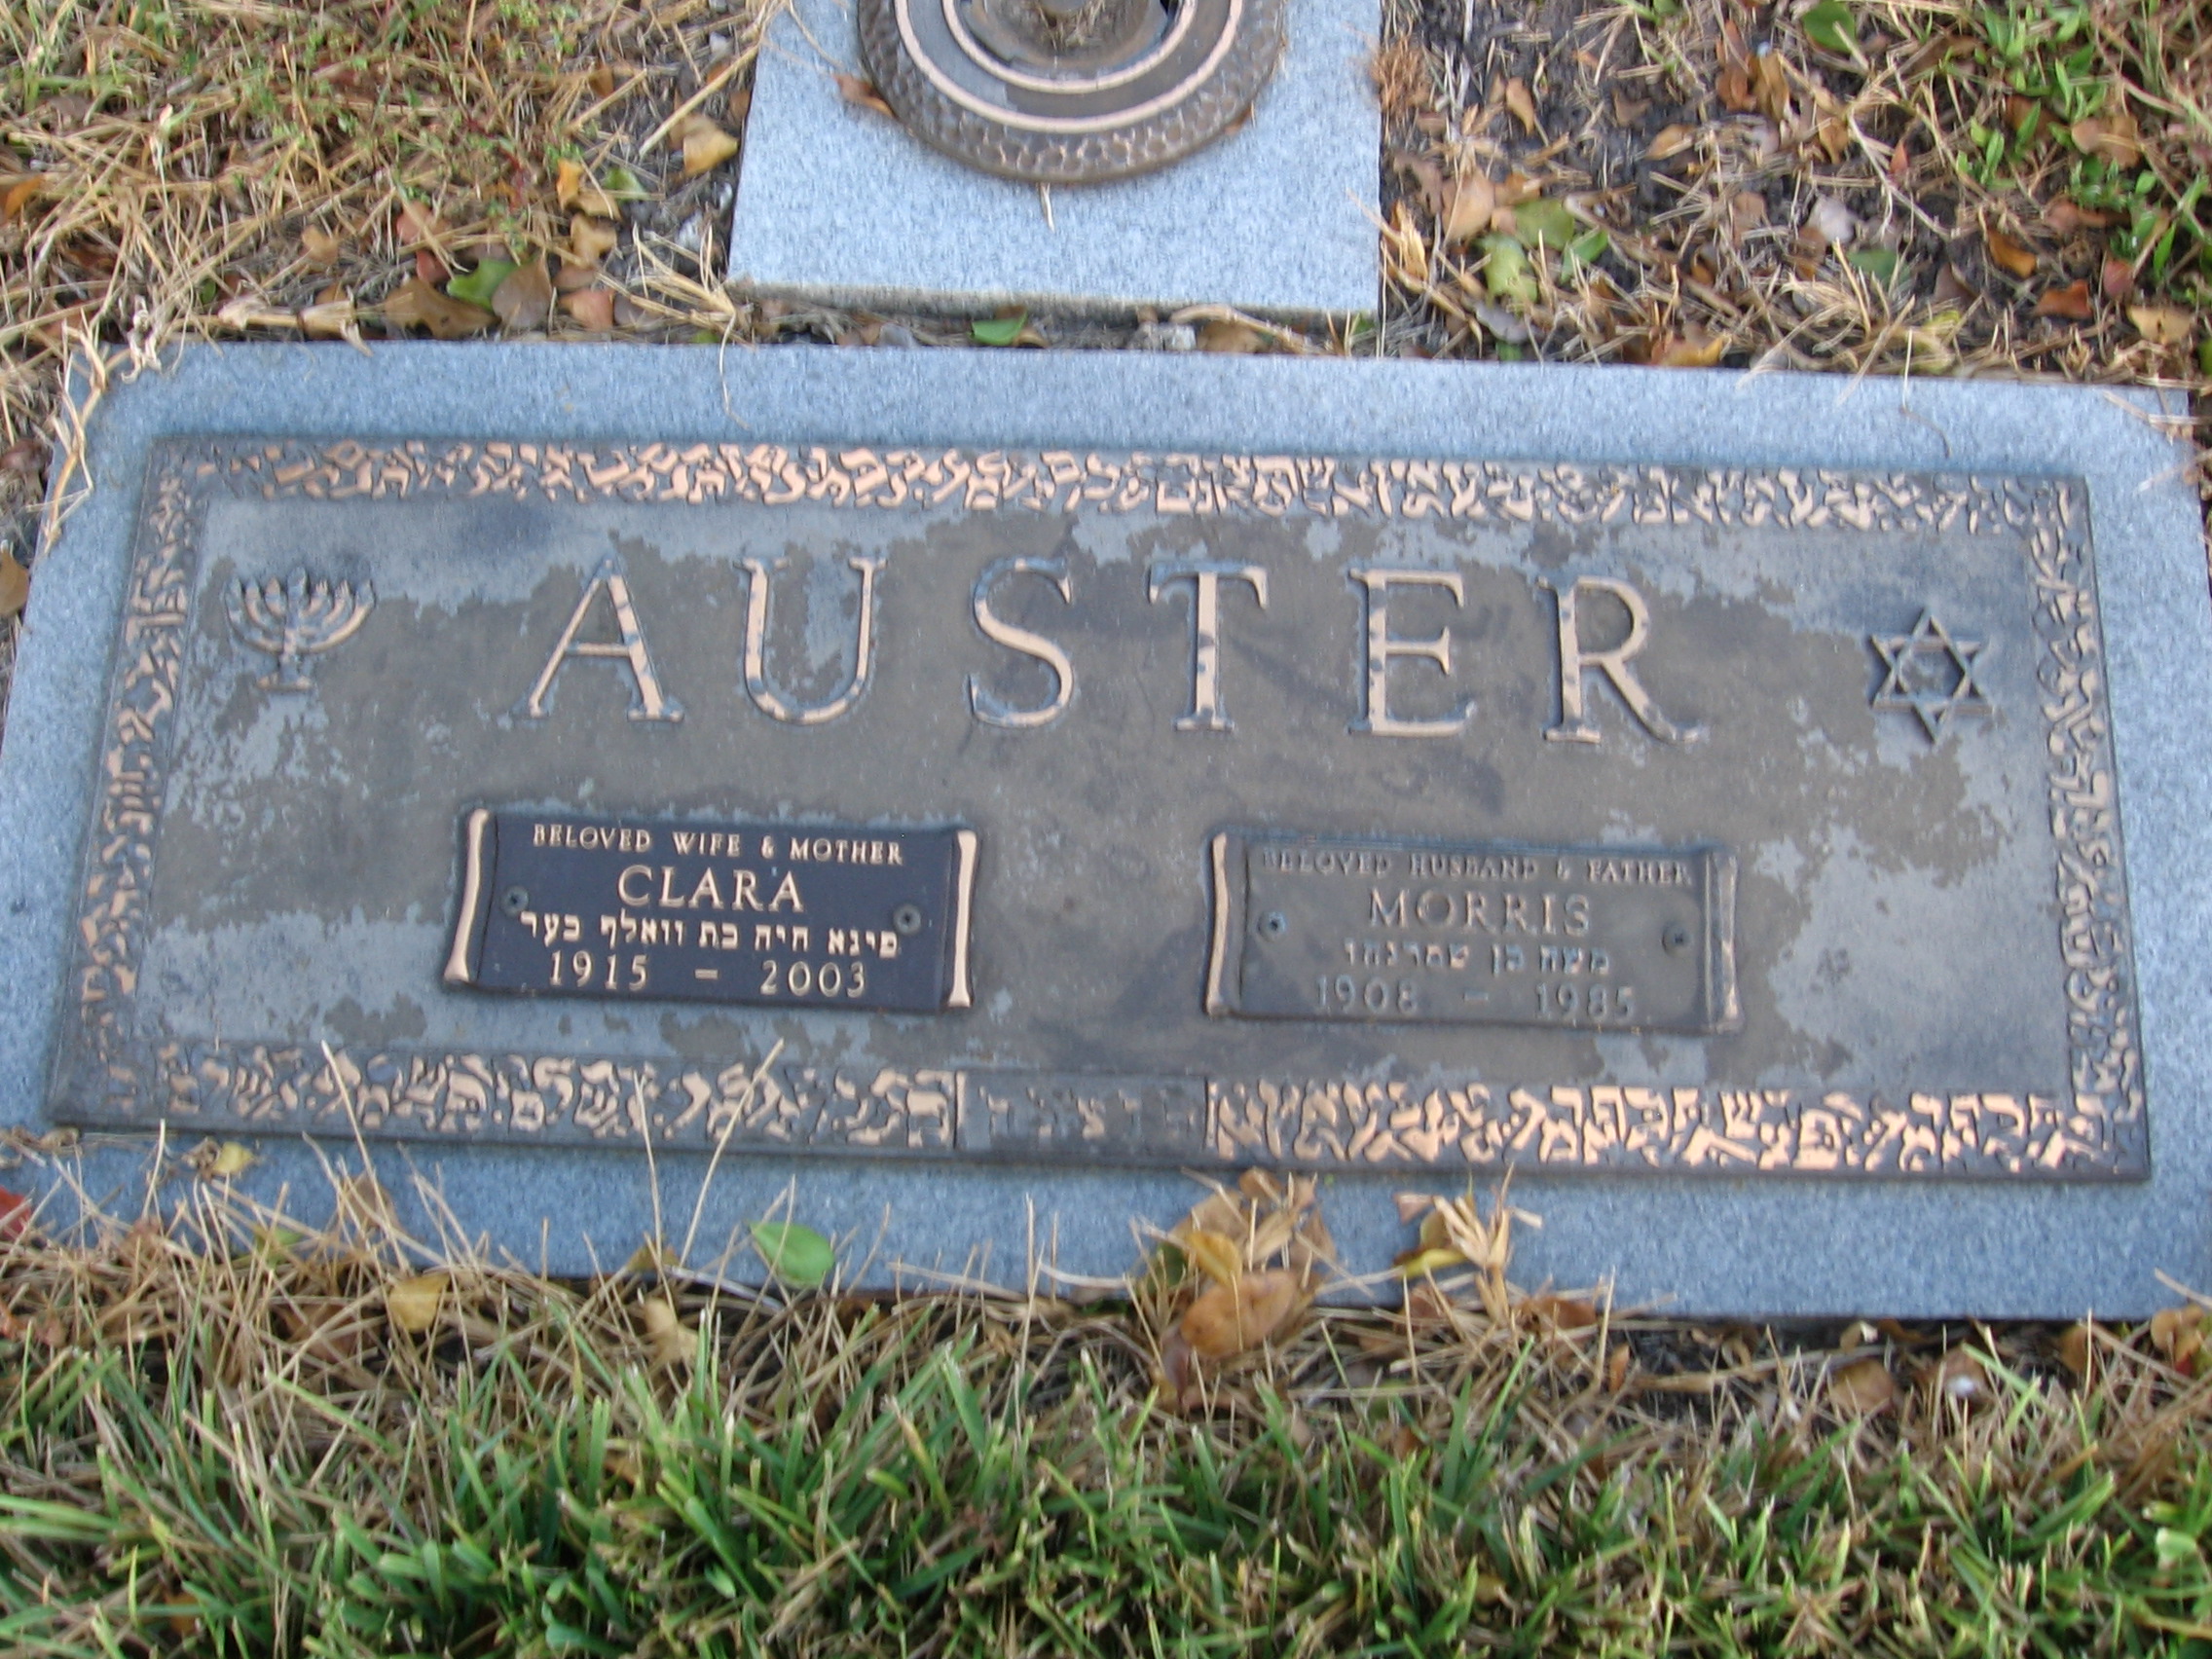 Morris Auster